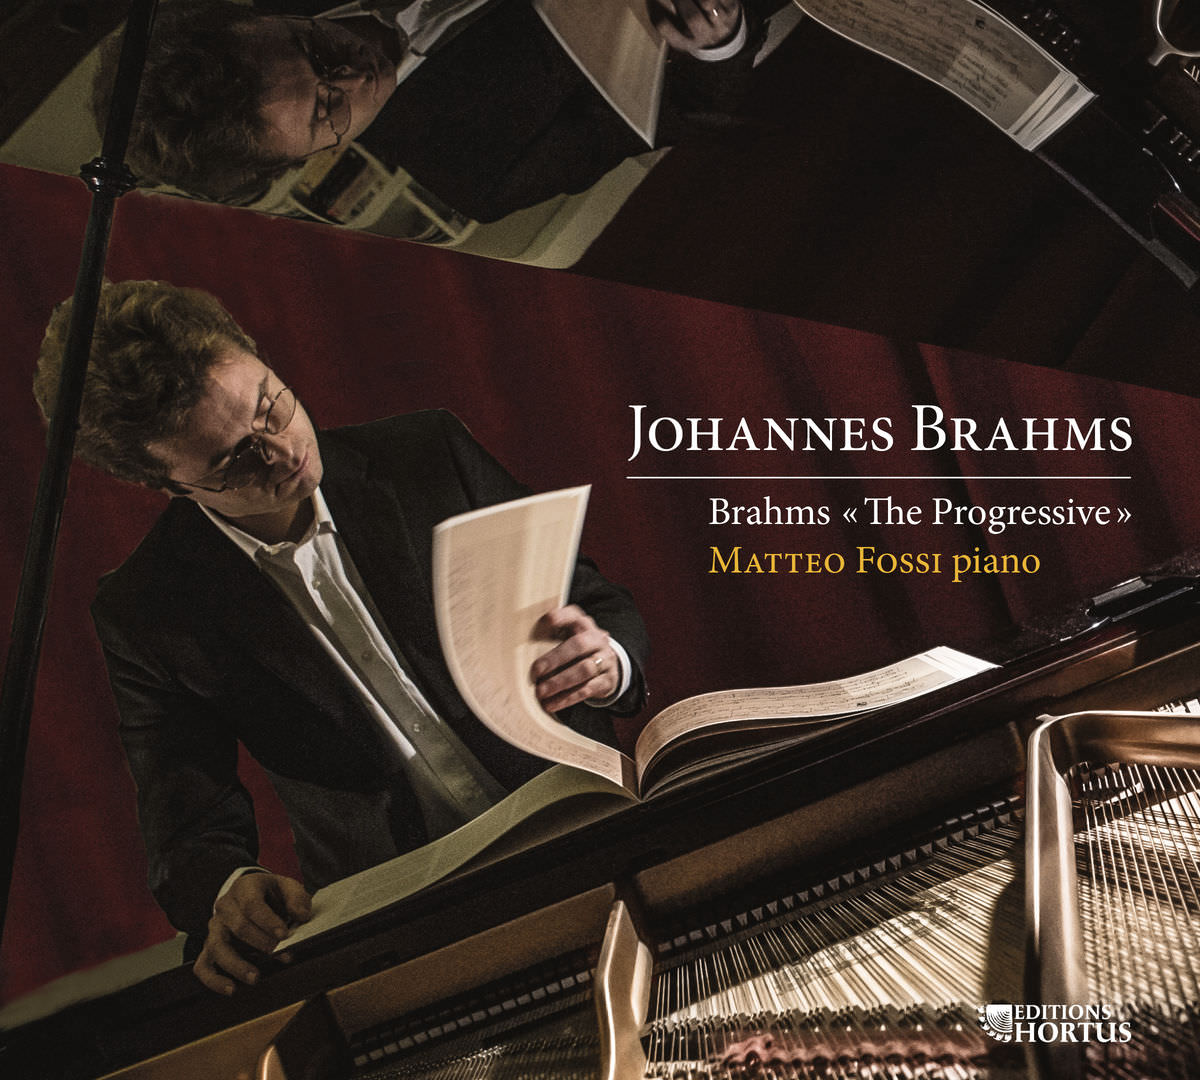 Matteo Fossi - Brahms: The Progressive (2014) [FLAC 24bit/96kHz]